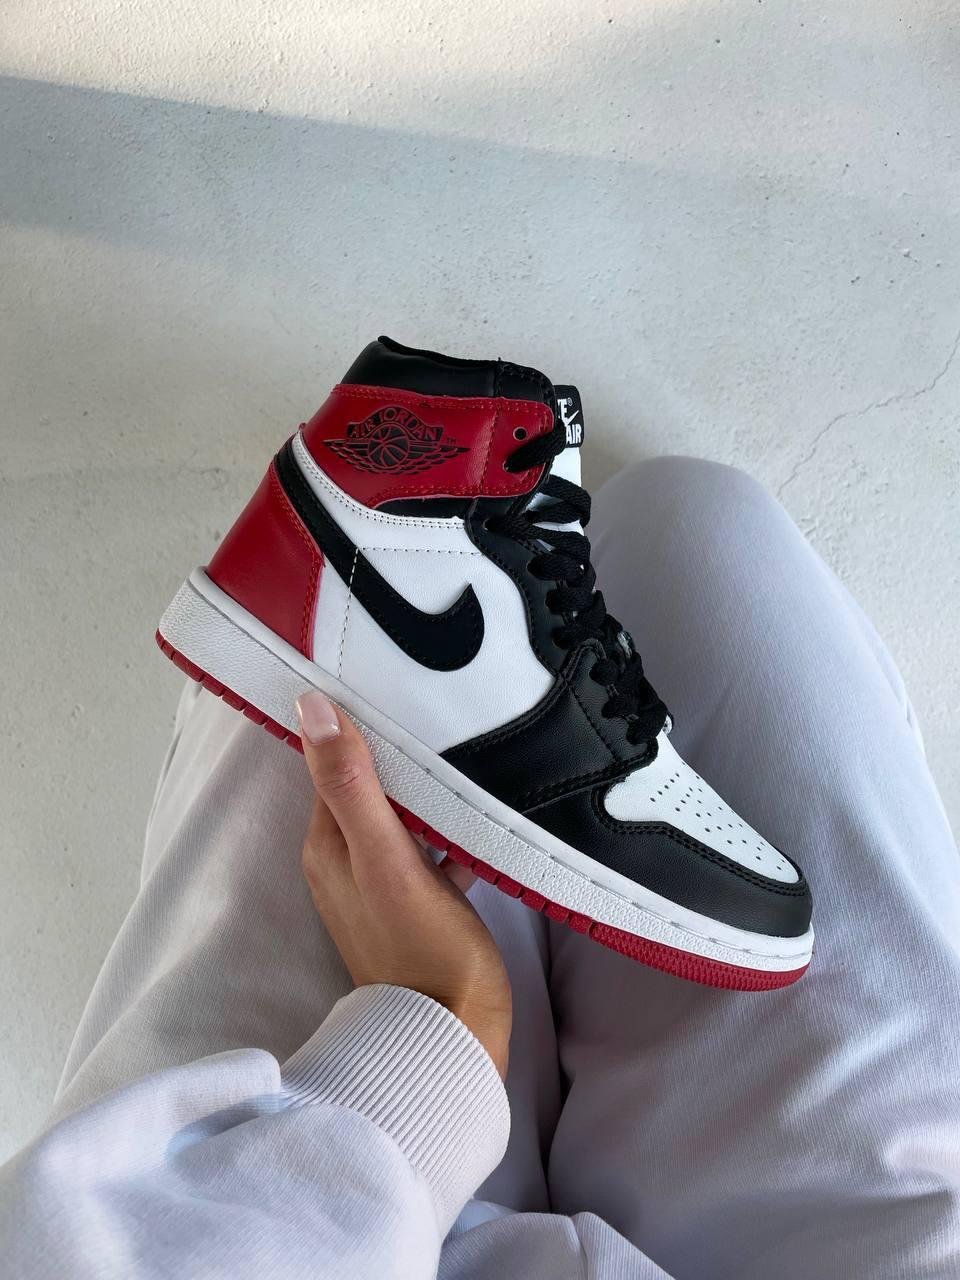 Чоловічі / жіночі кросівки Nike Air Jordan 1 RETRO HIGH RED / BLACK SWOOSH | Найк Аір Джордан 1 Червоні